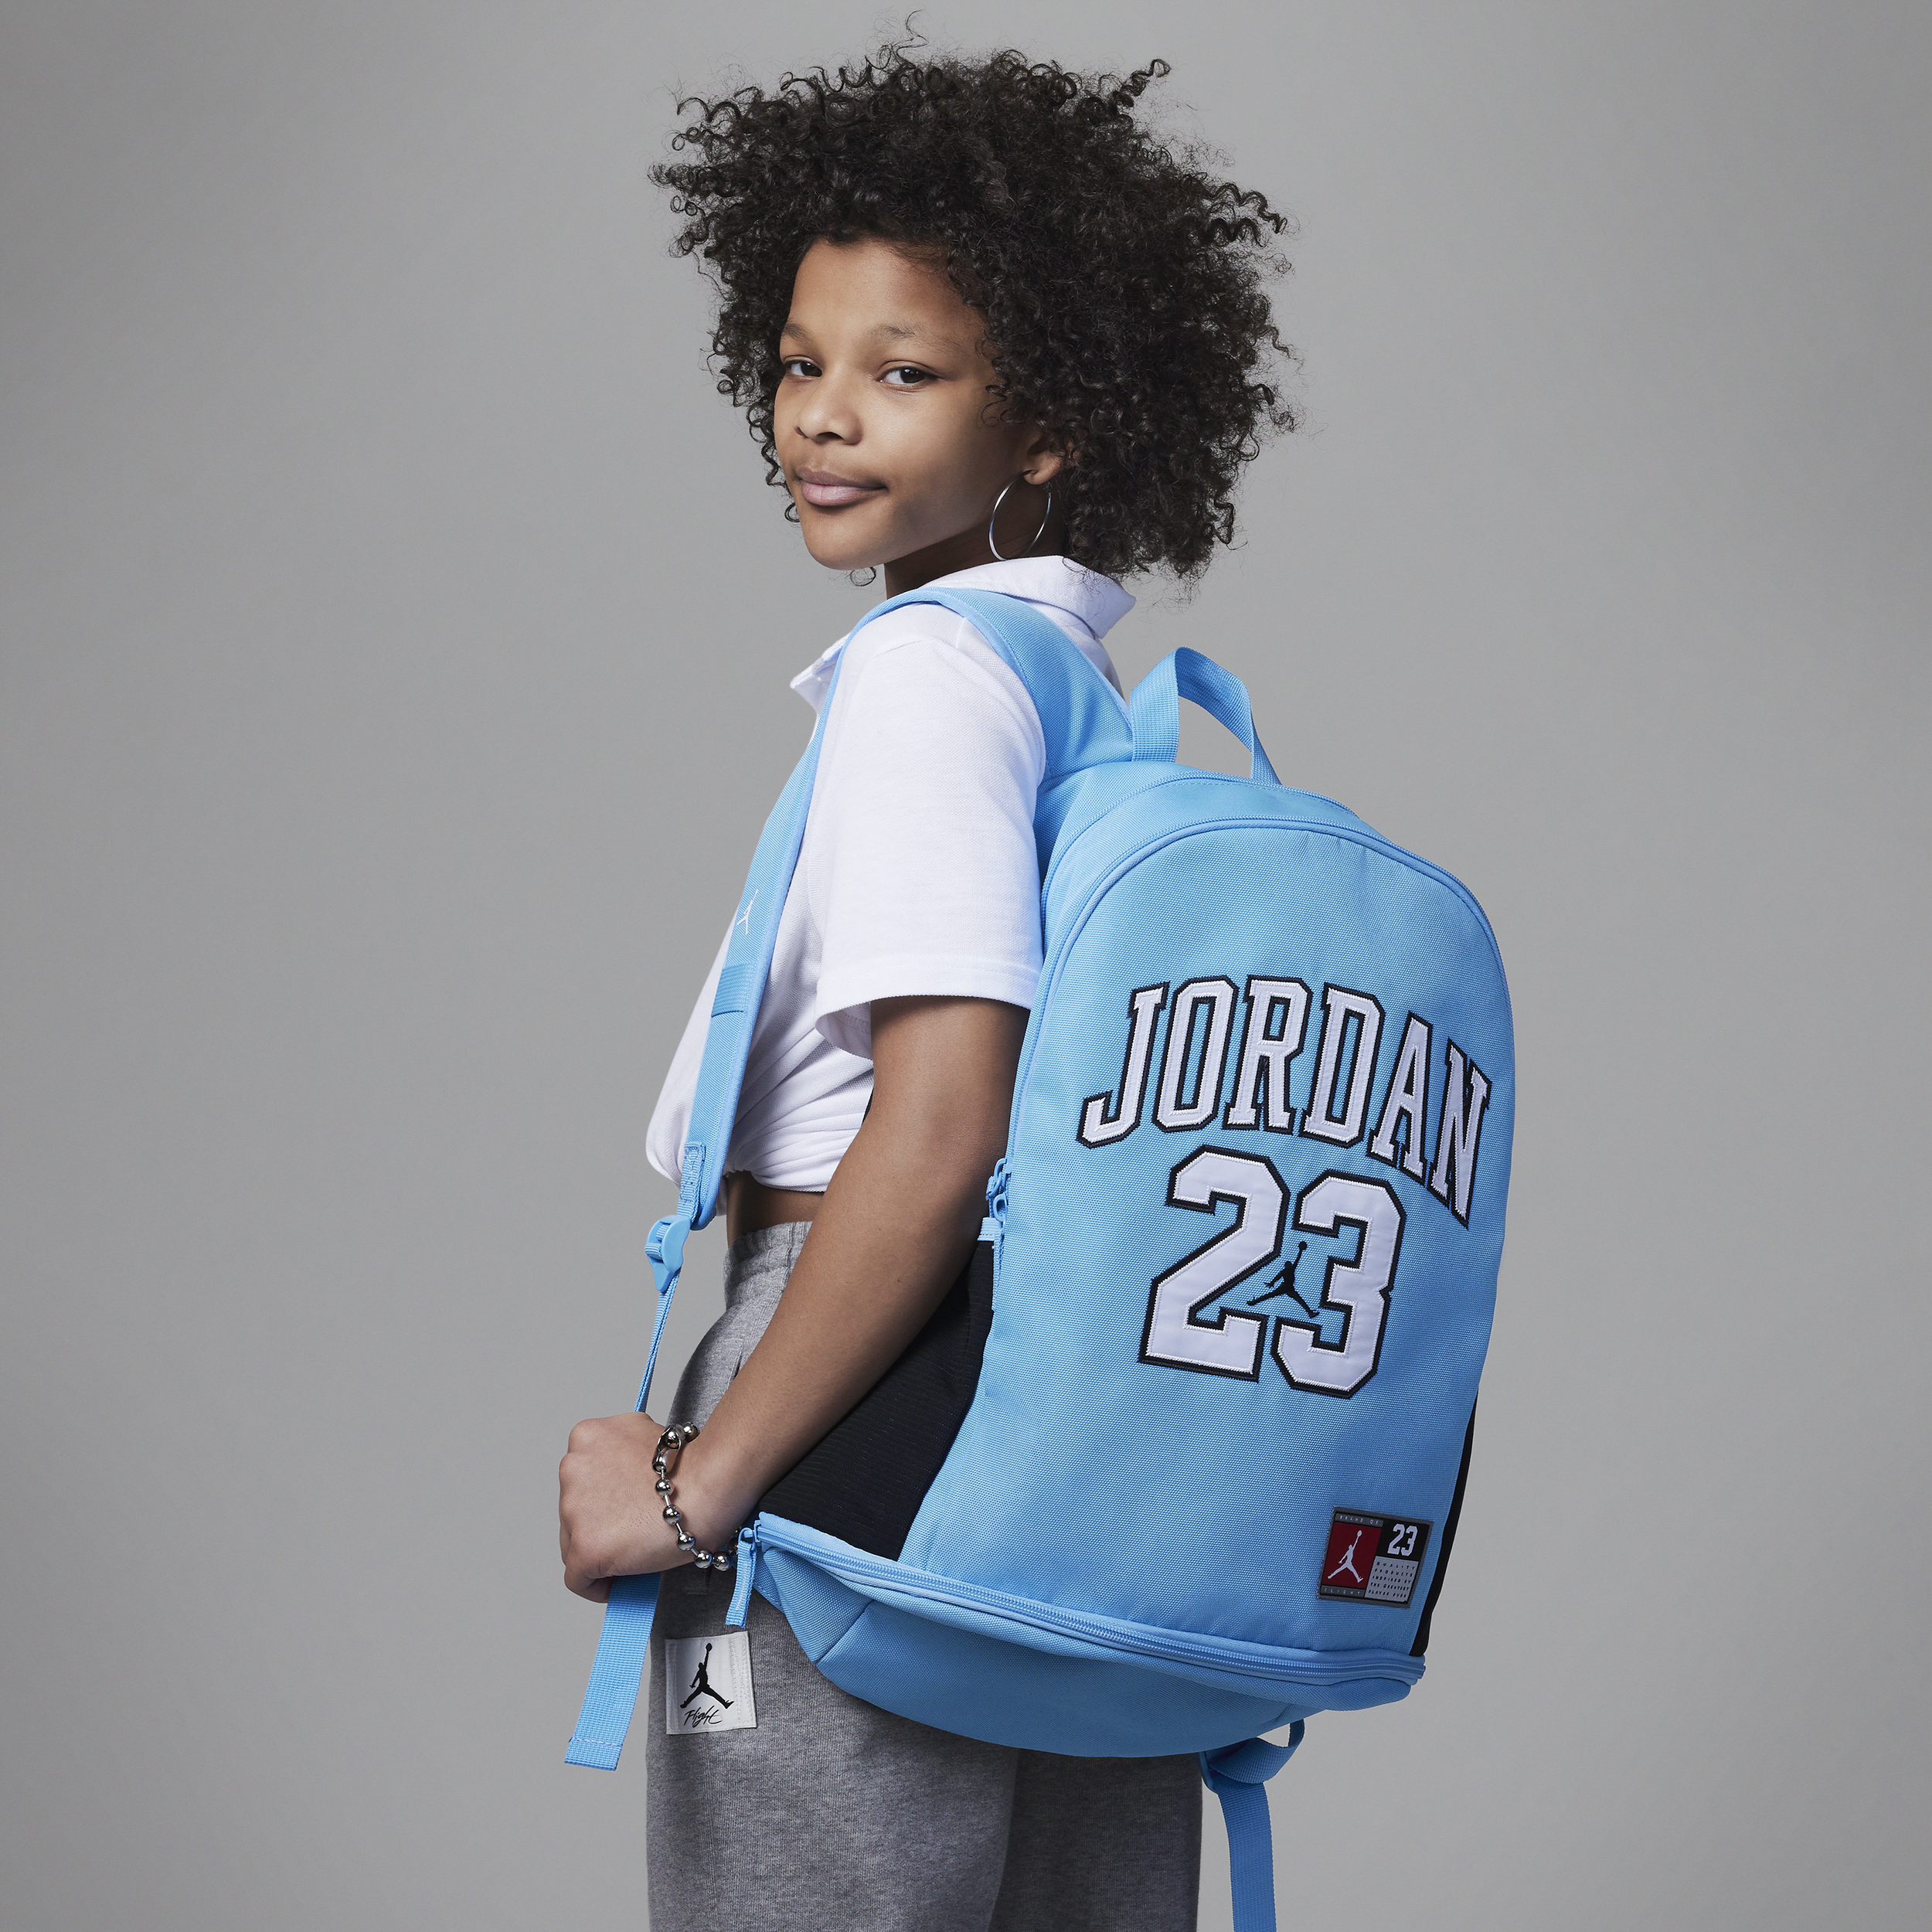 Jordan Jersey Backpack rugzak voor kids (27 liter) - Blauw